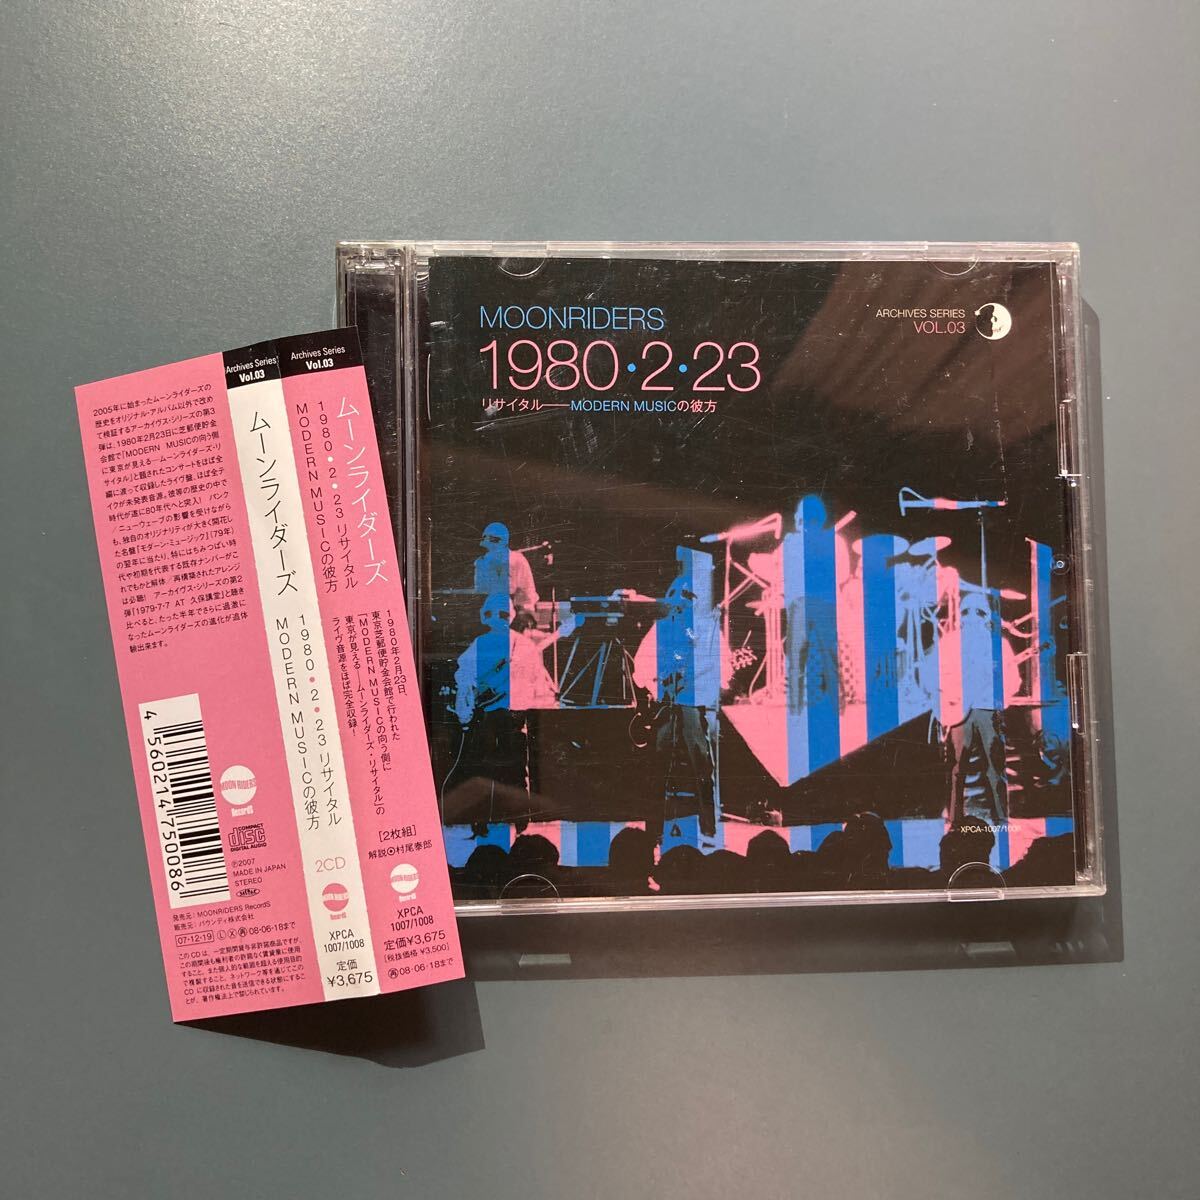 [帯付2CD] ムーンライダーズ/1980223 リサイタル MODERN MUSICの彼方 _画像1